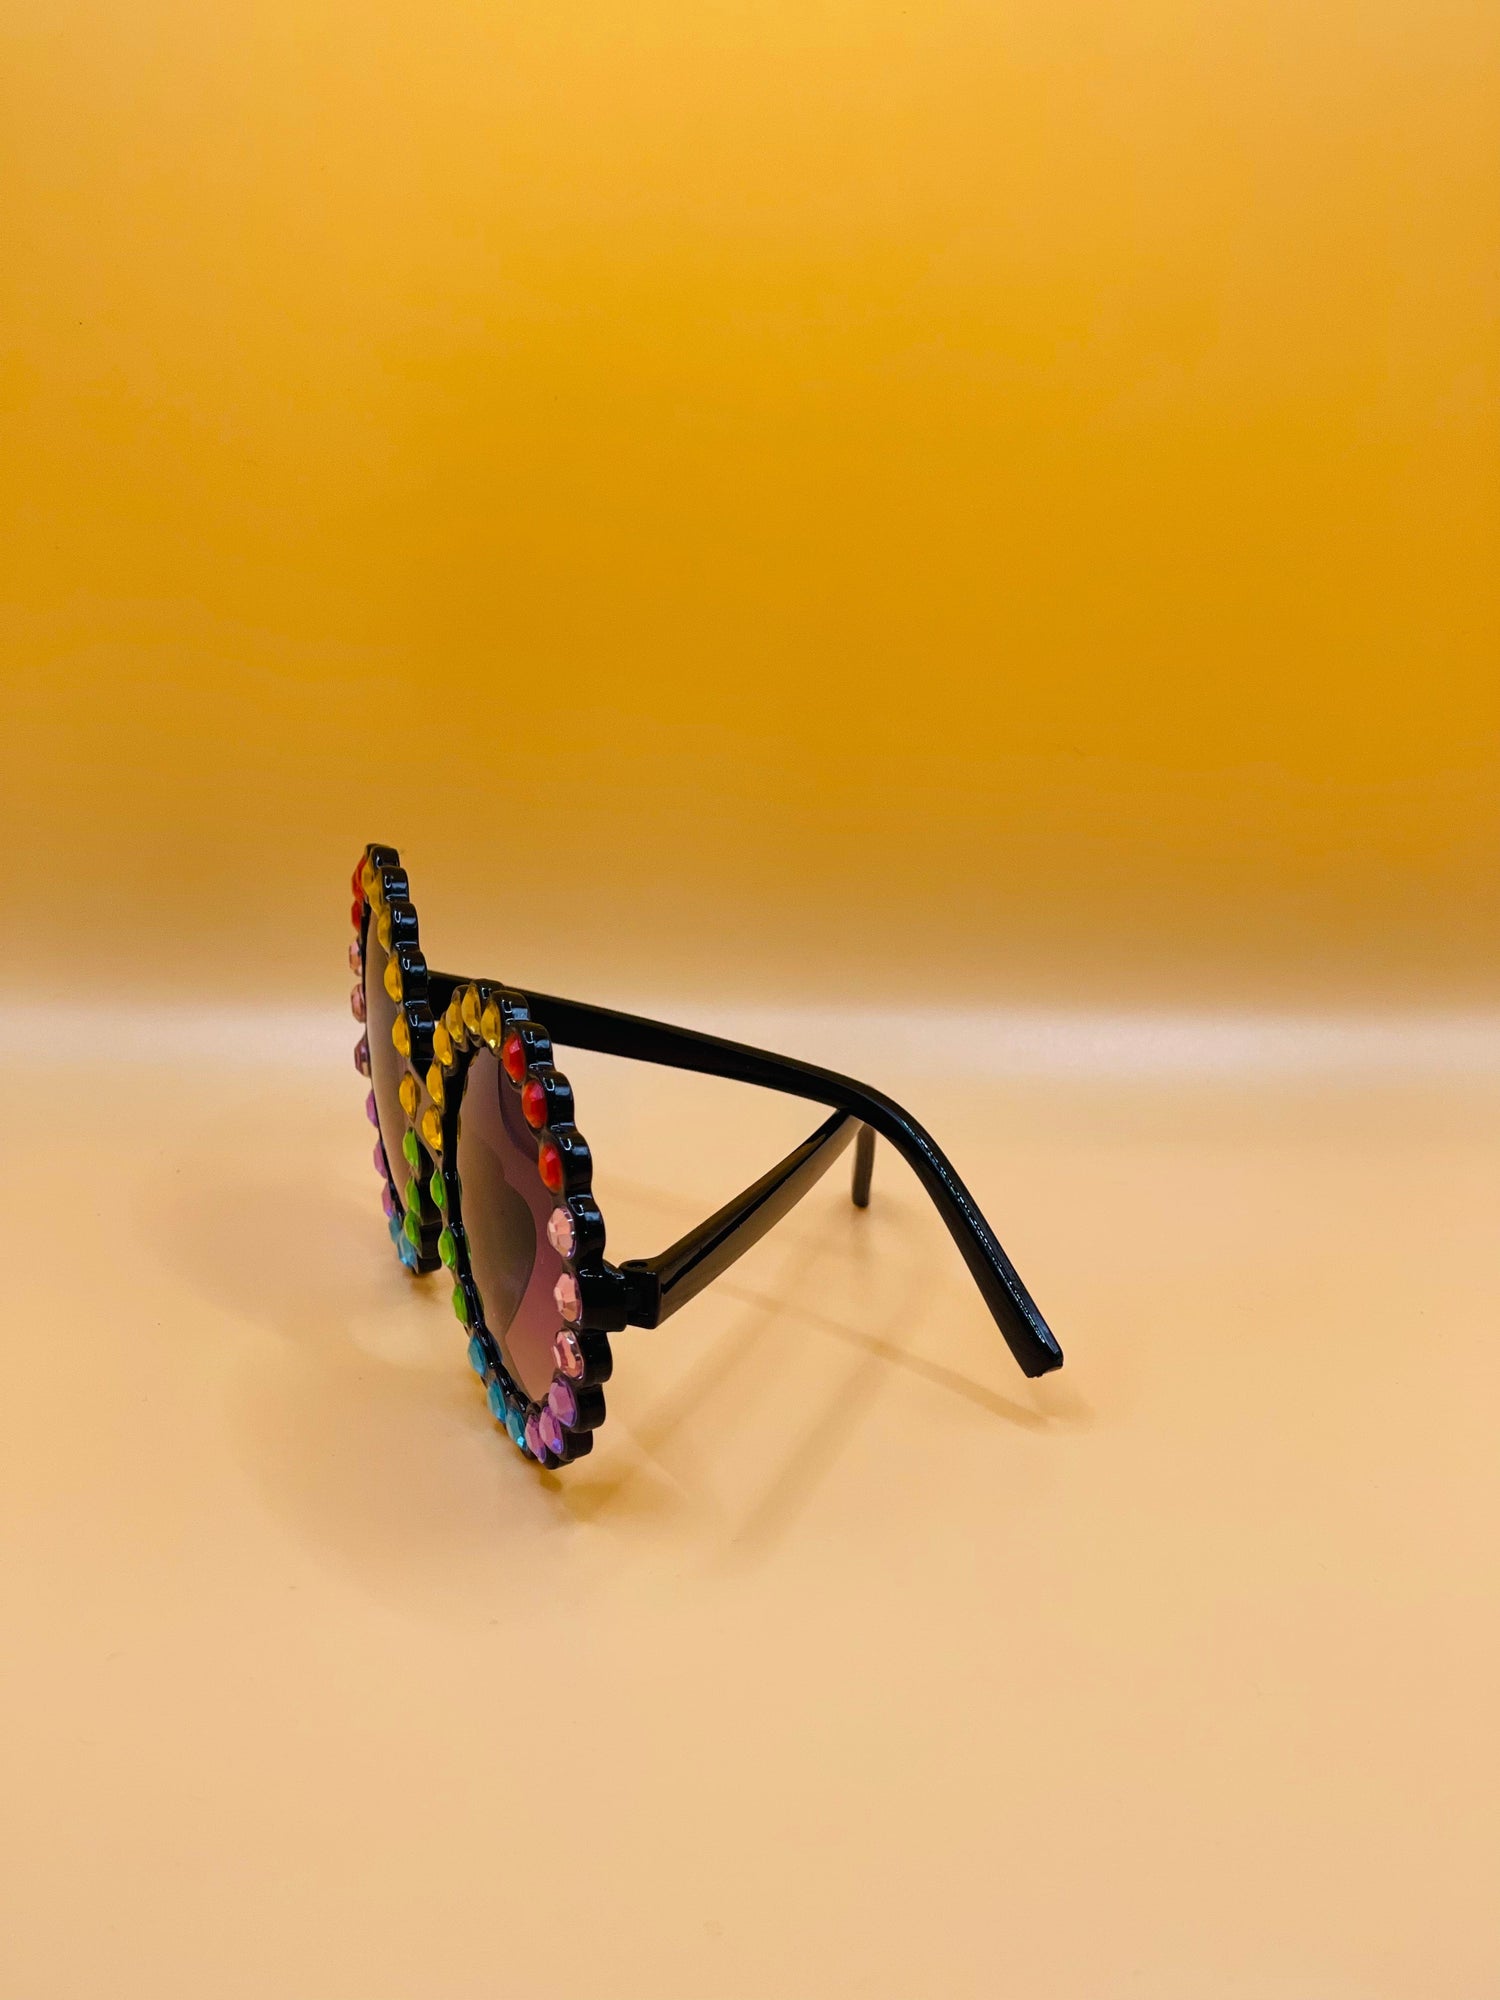 The Magnifique Oversized Sunglasses for Women | TM-86 | Black Lens with  Black Frame | Stylish Women Sunglasses | Trending New Sunglasses for Girls